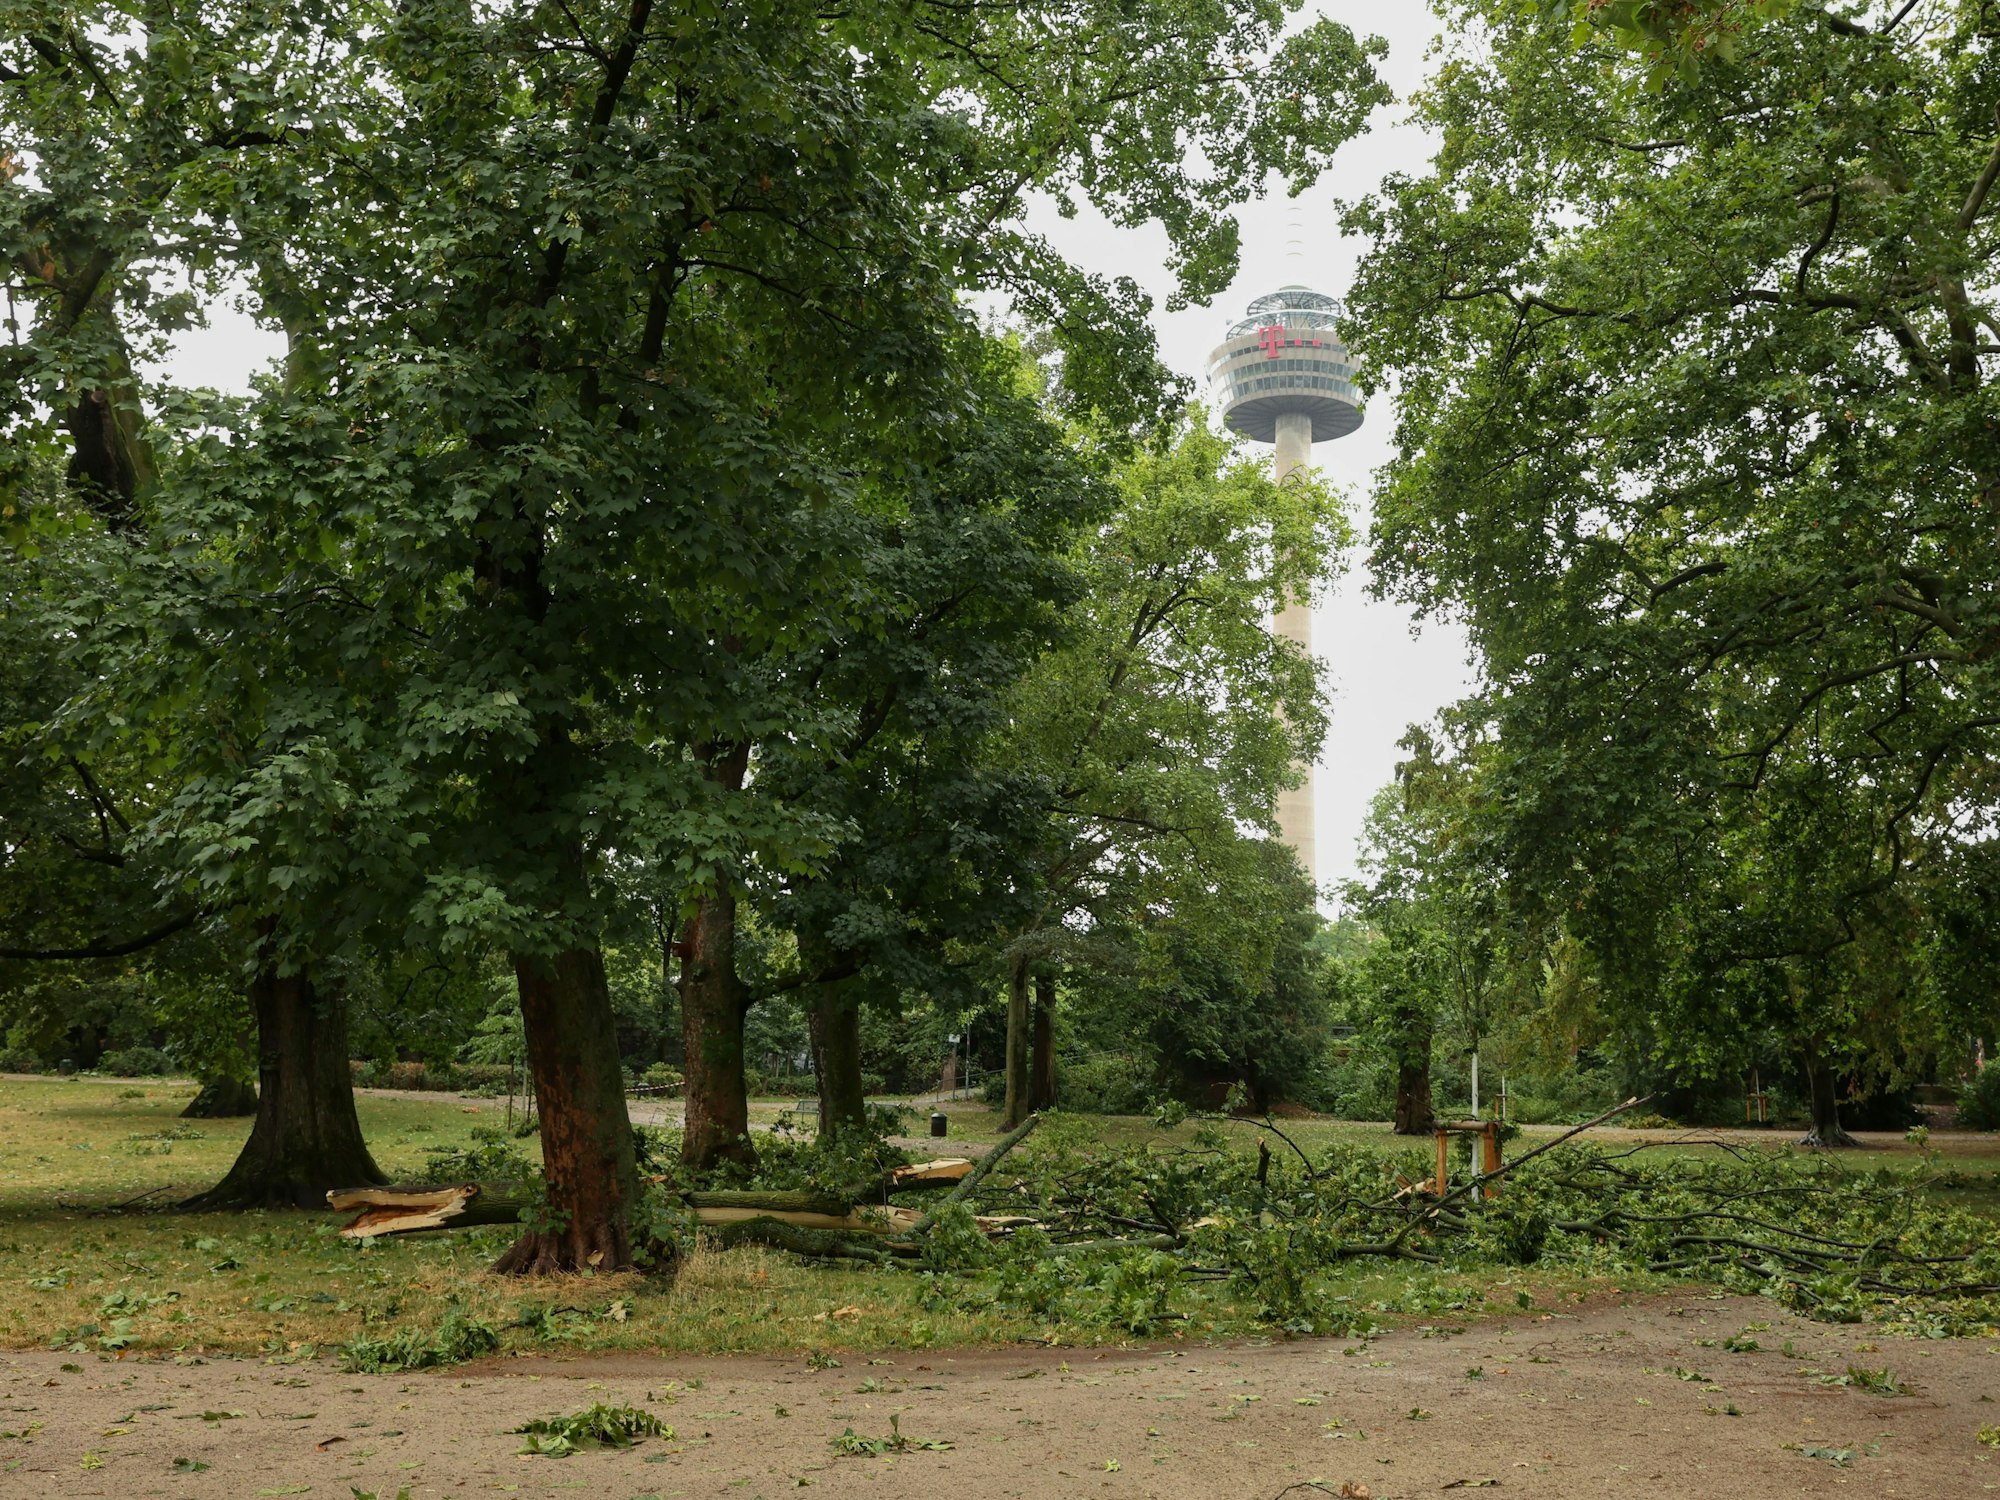 Gewitterschäden im Kölner Stadtpark nach dem schweren Gewitter am Montag.

